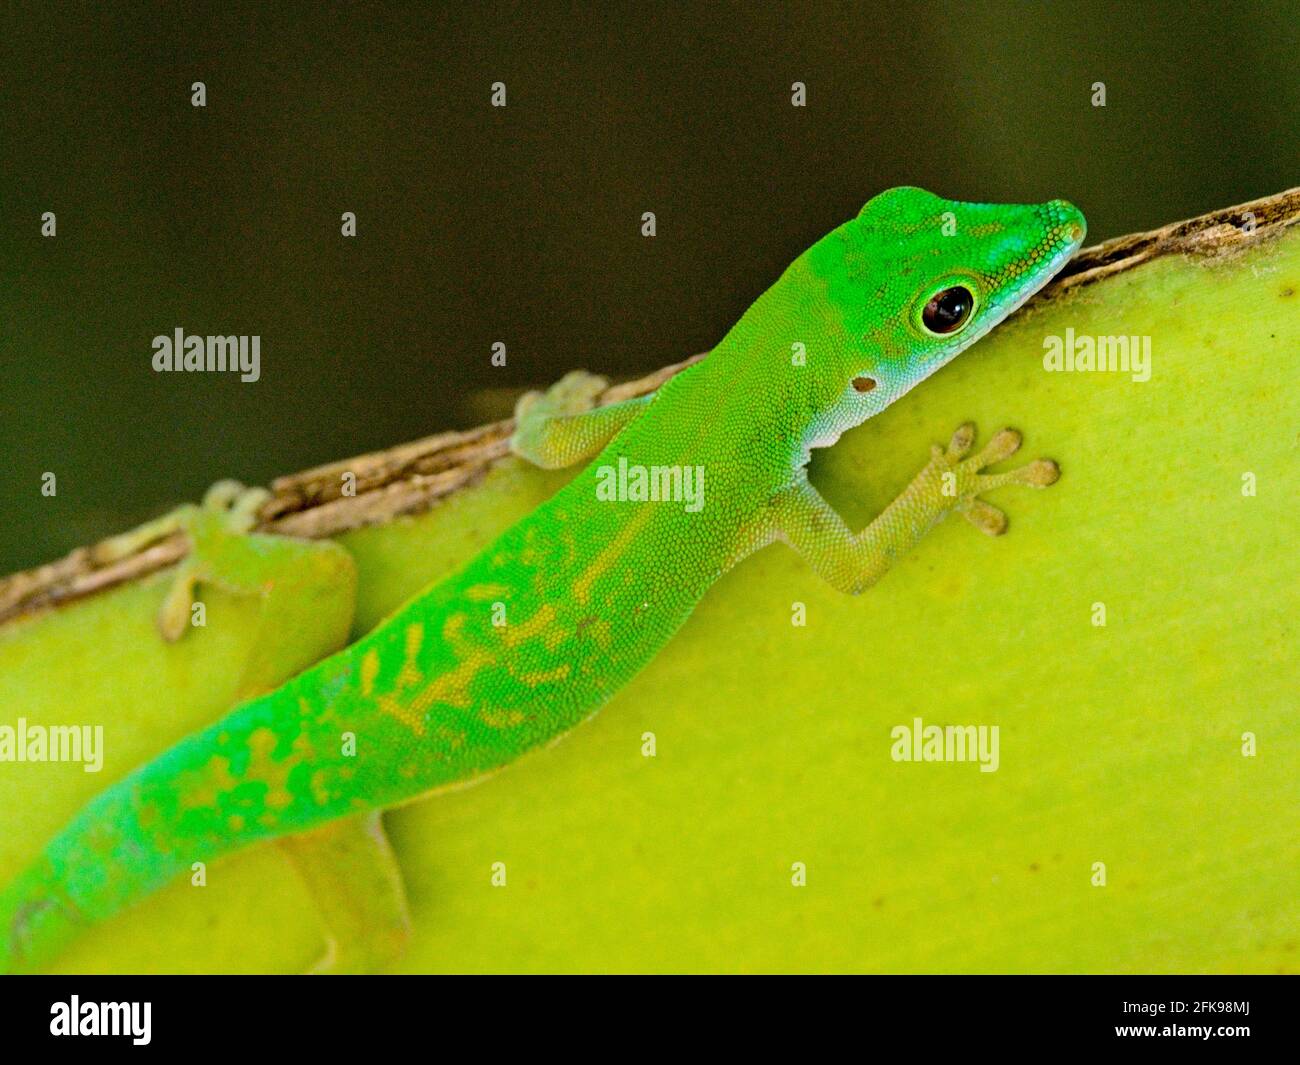 Gros plan d'un jour vert brillant Gecko (Phelsuma astriata) Seychelles. Banque D'Images